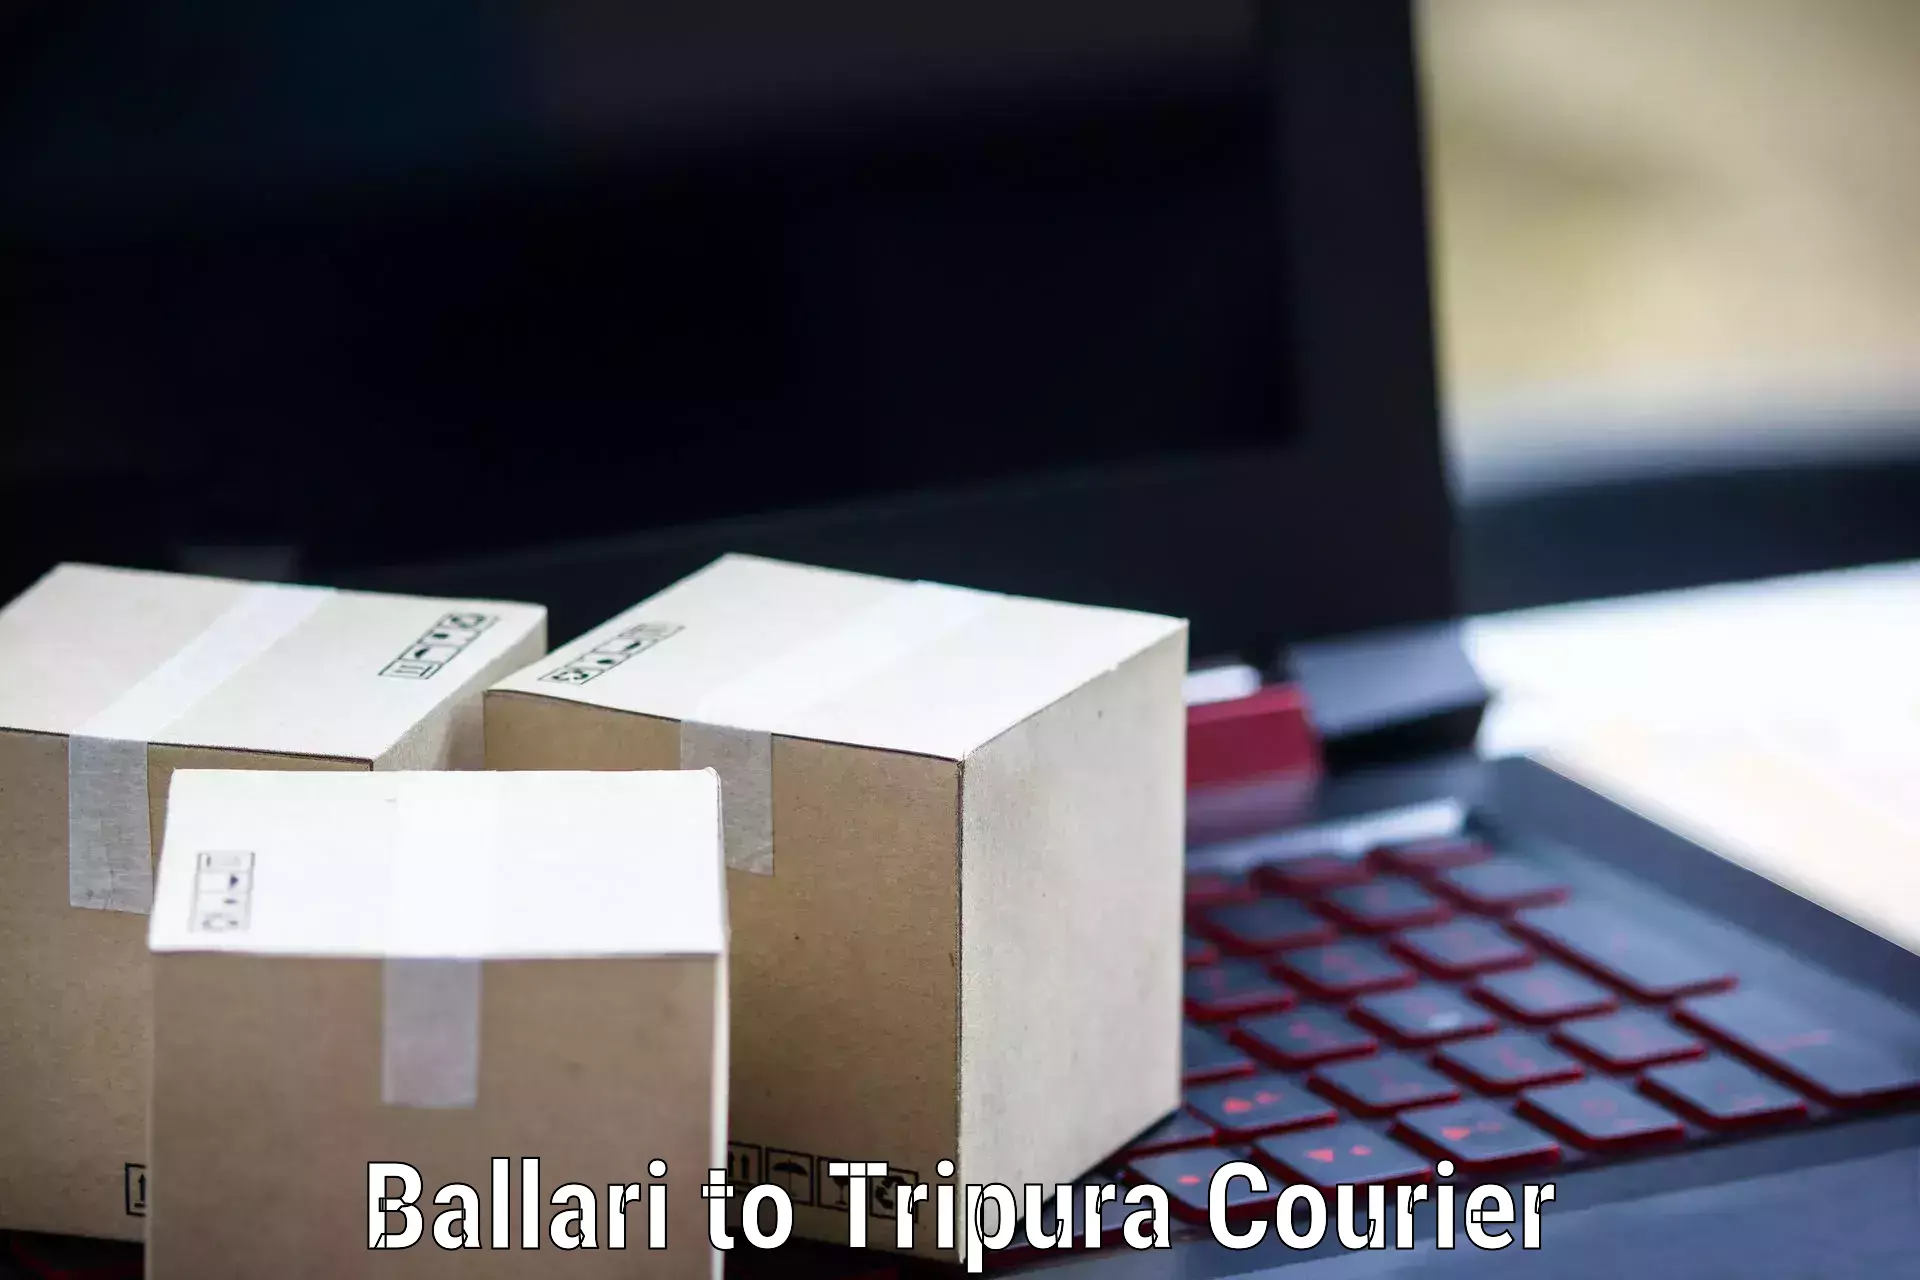 Speedy delivery service Ballari to Tripura